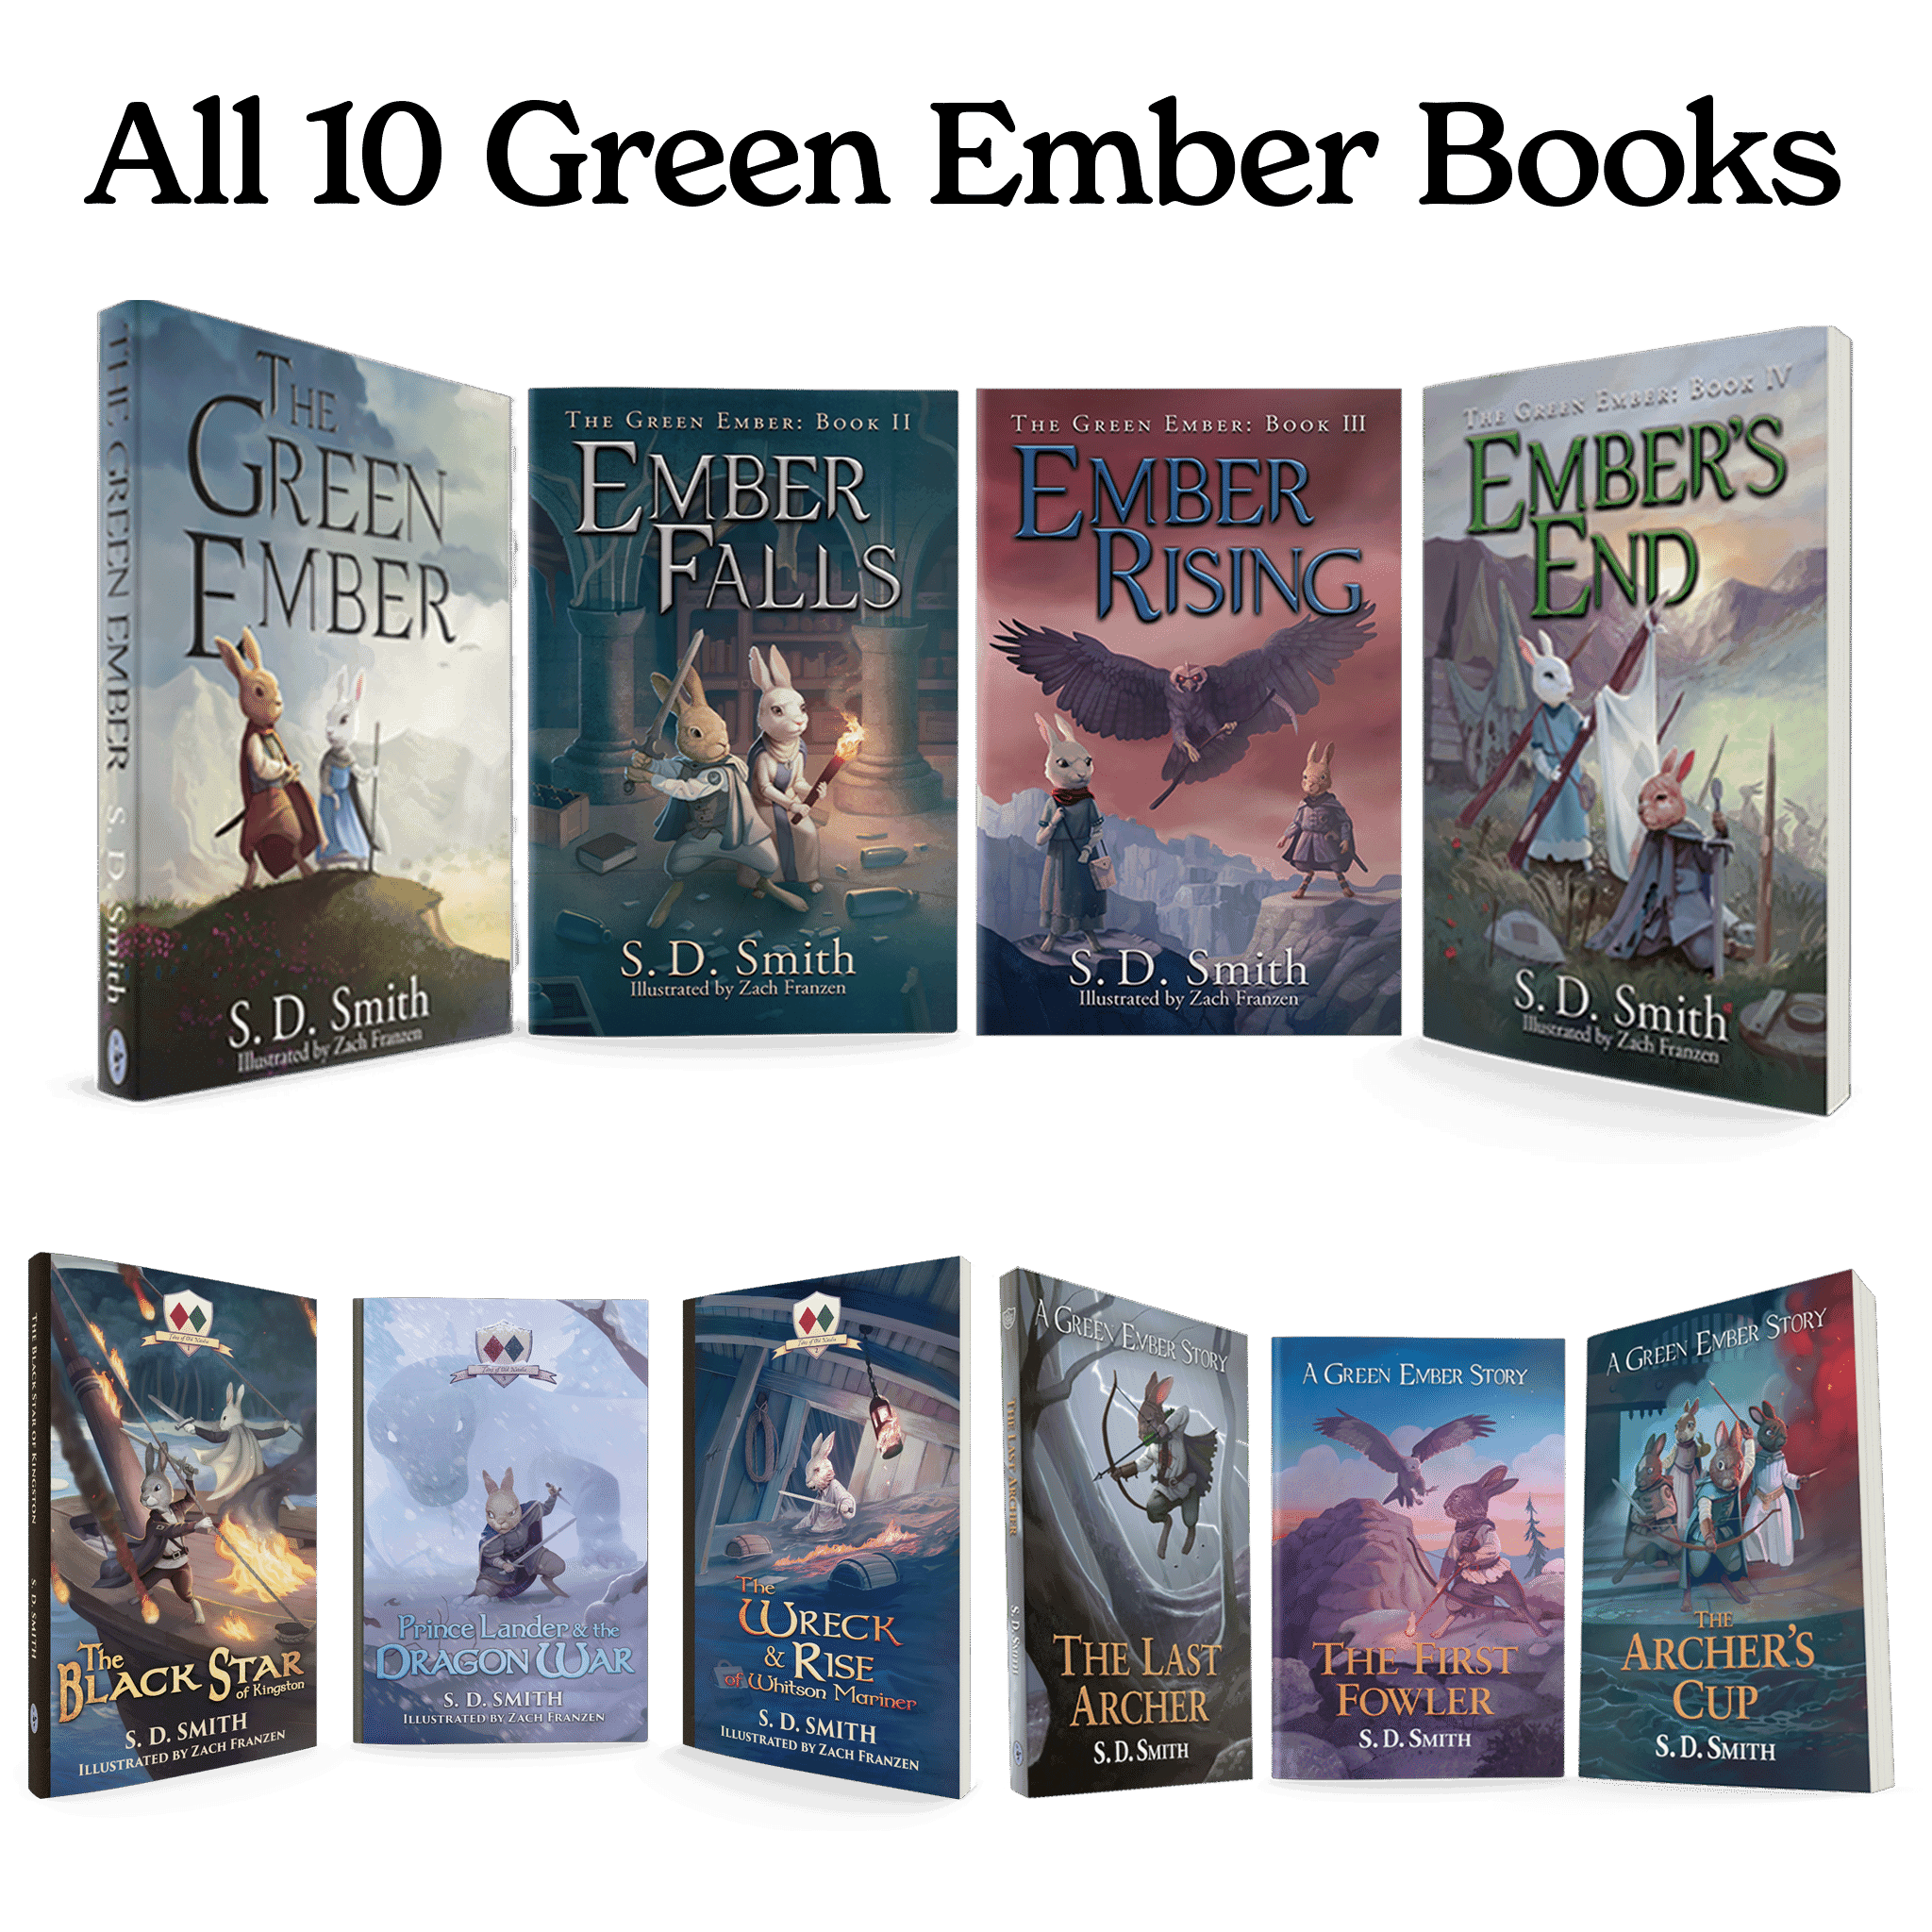 All 10 Green Ember Books